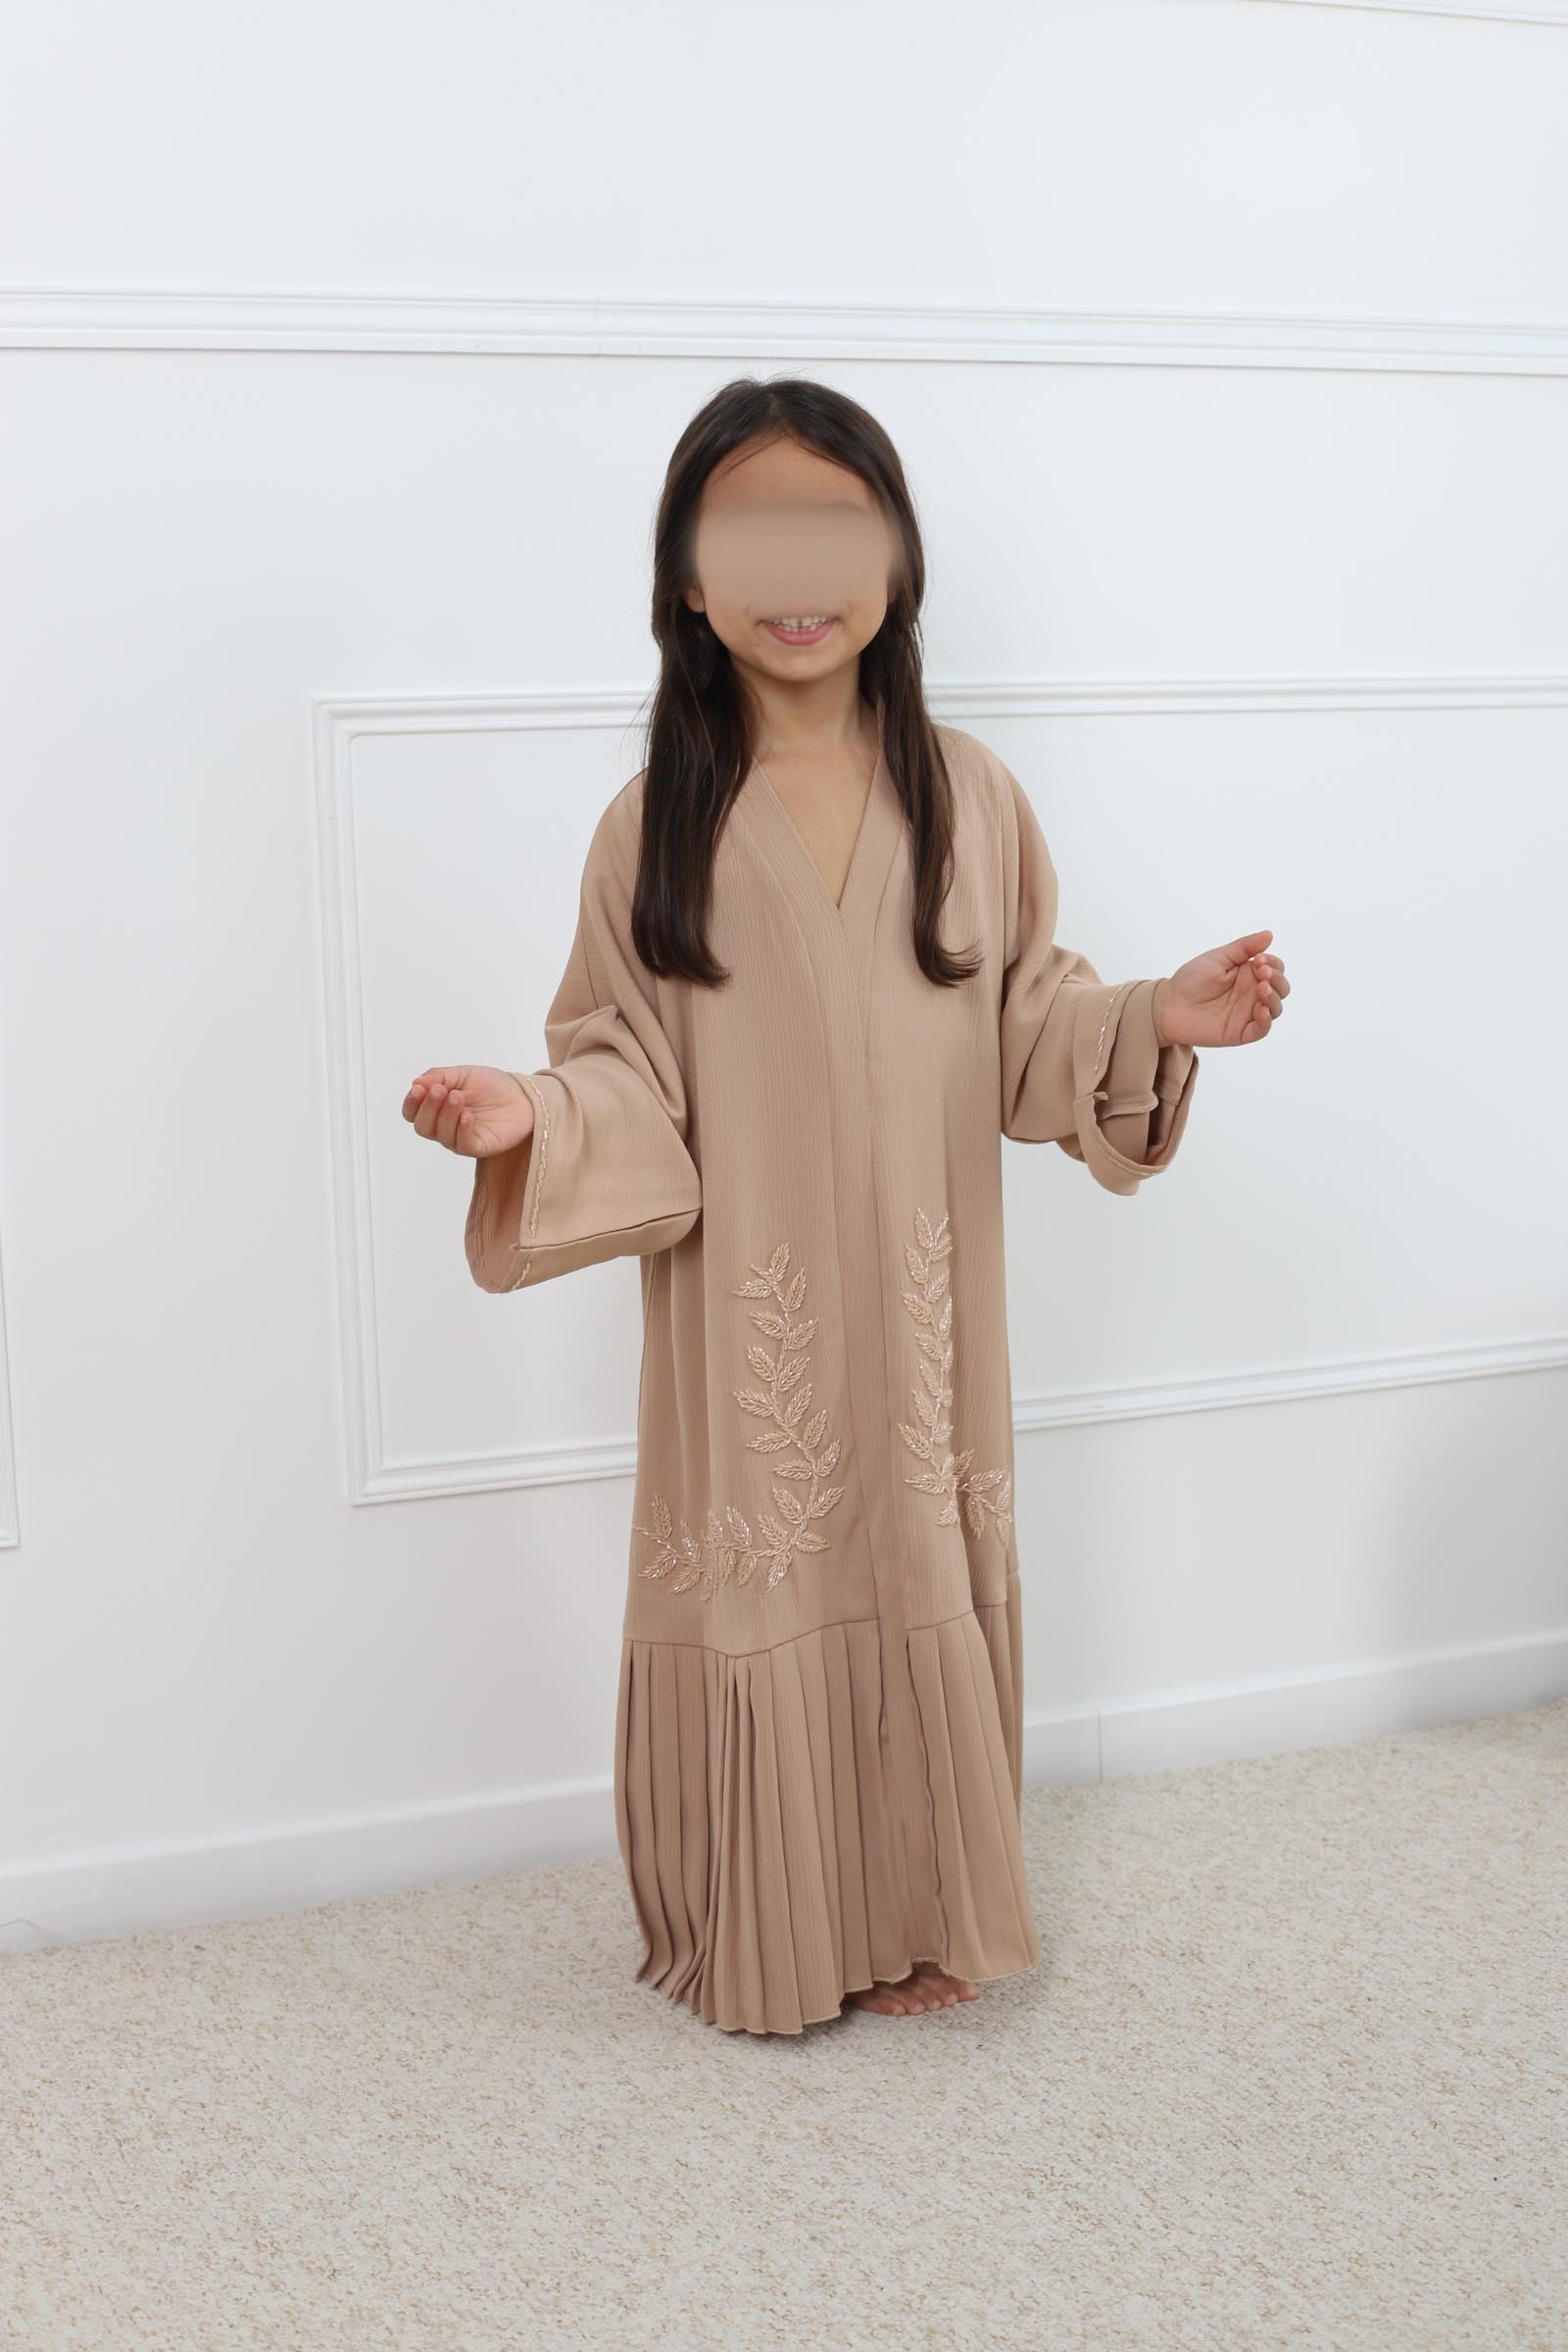 Abaya mother-daughter dubai, child outfit